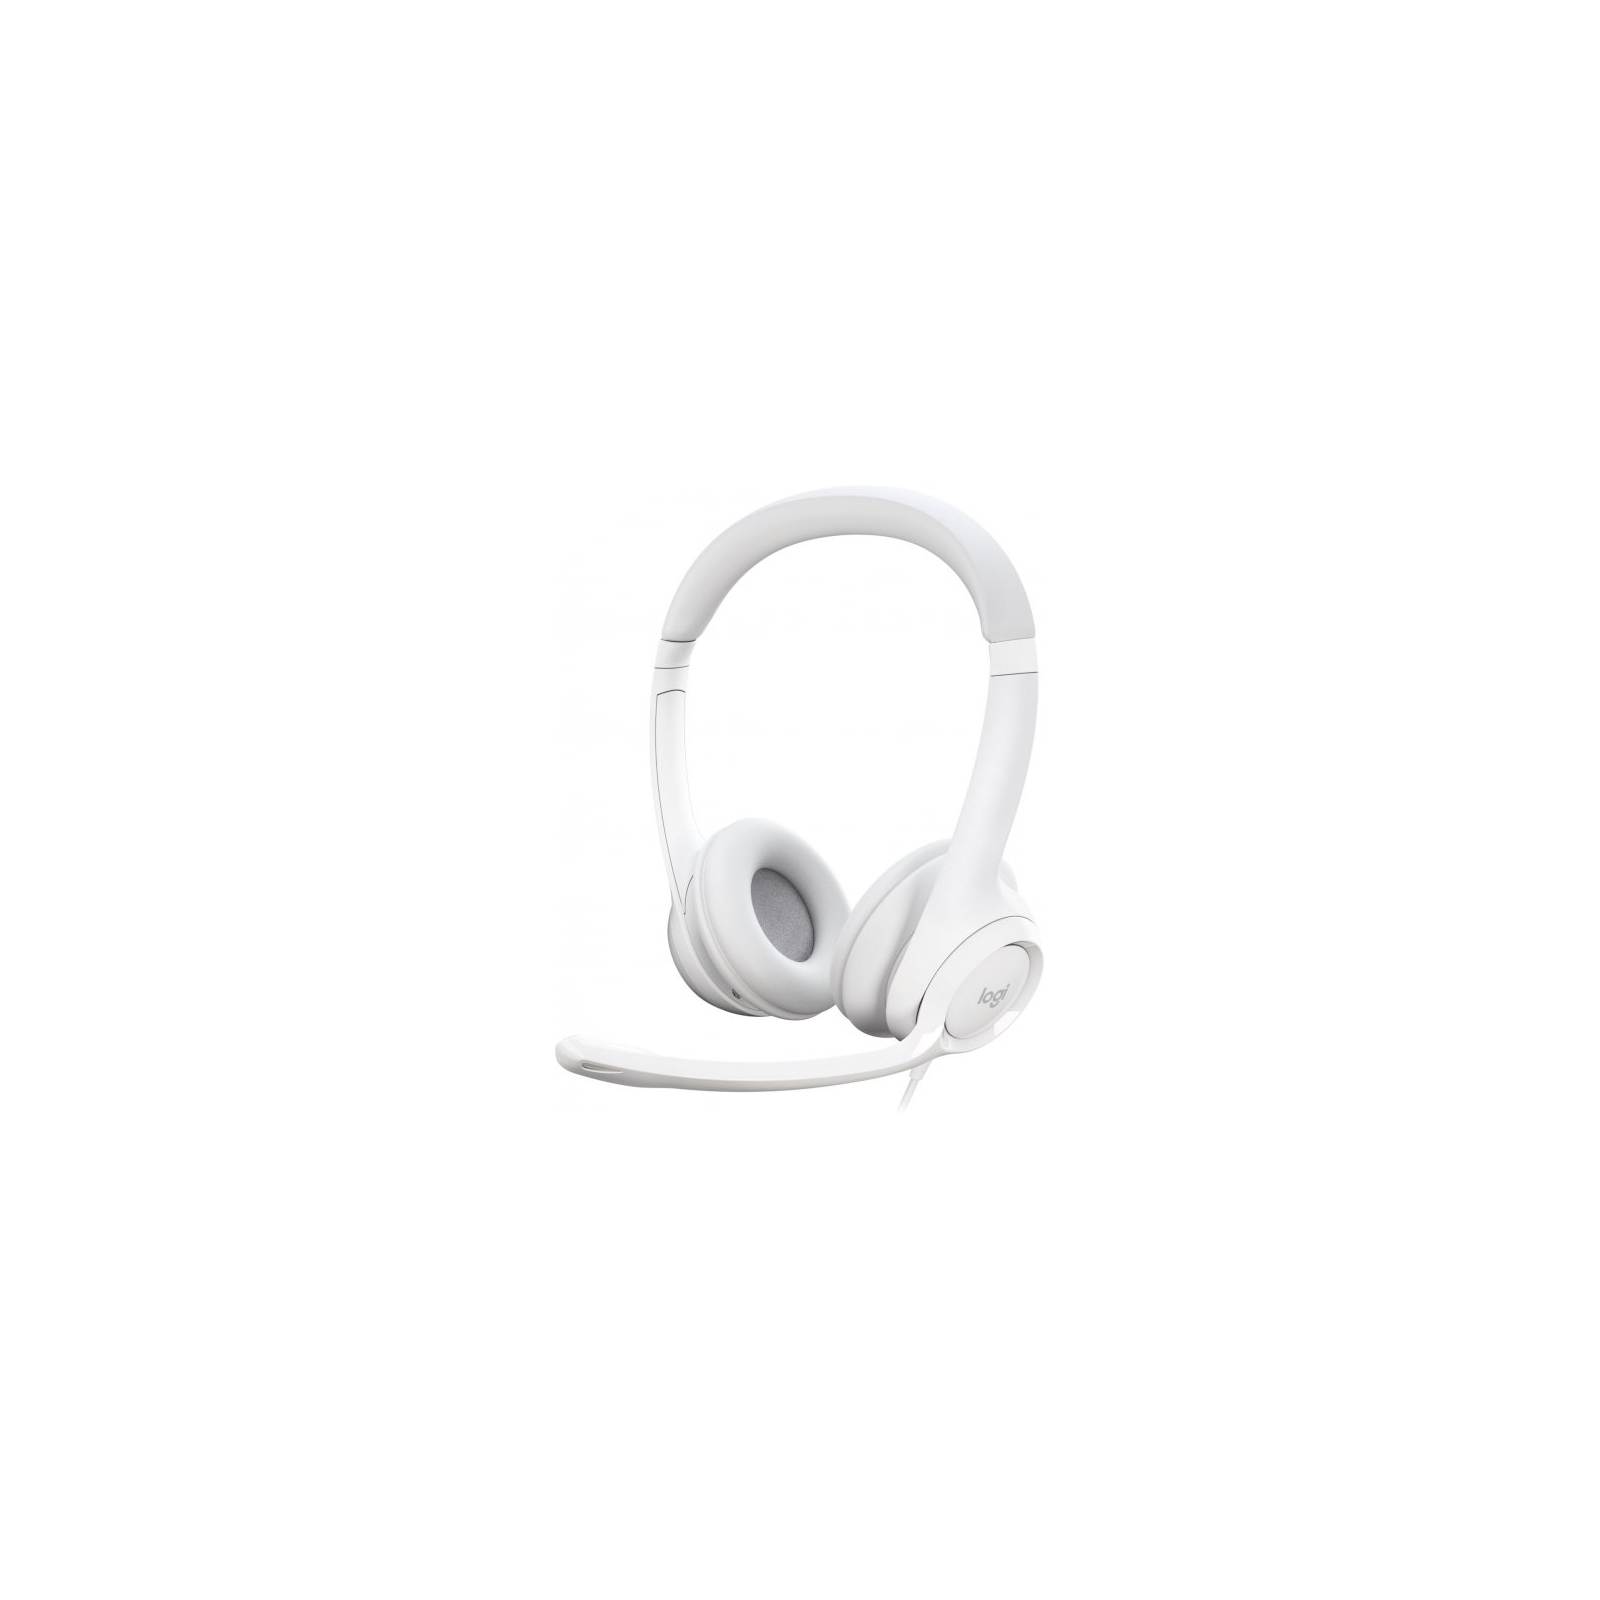 Навушники Logitech H390 USB White (981-001286)